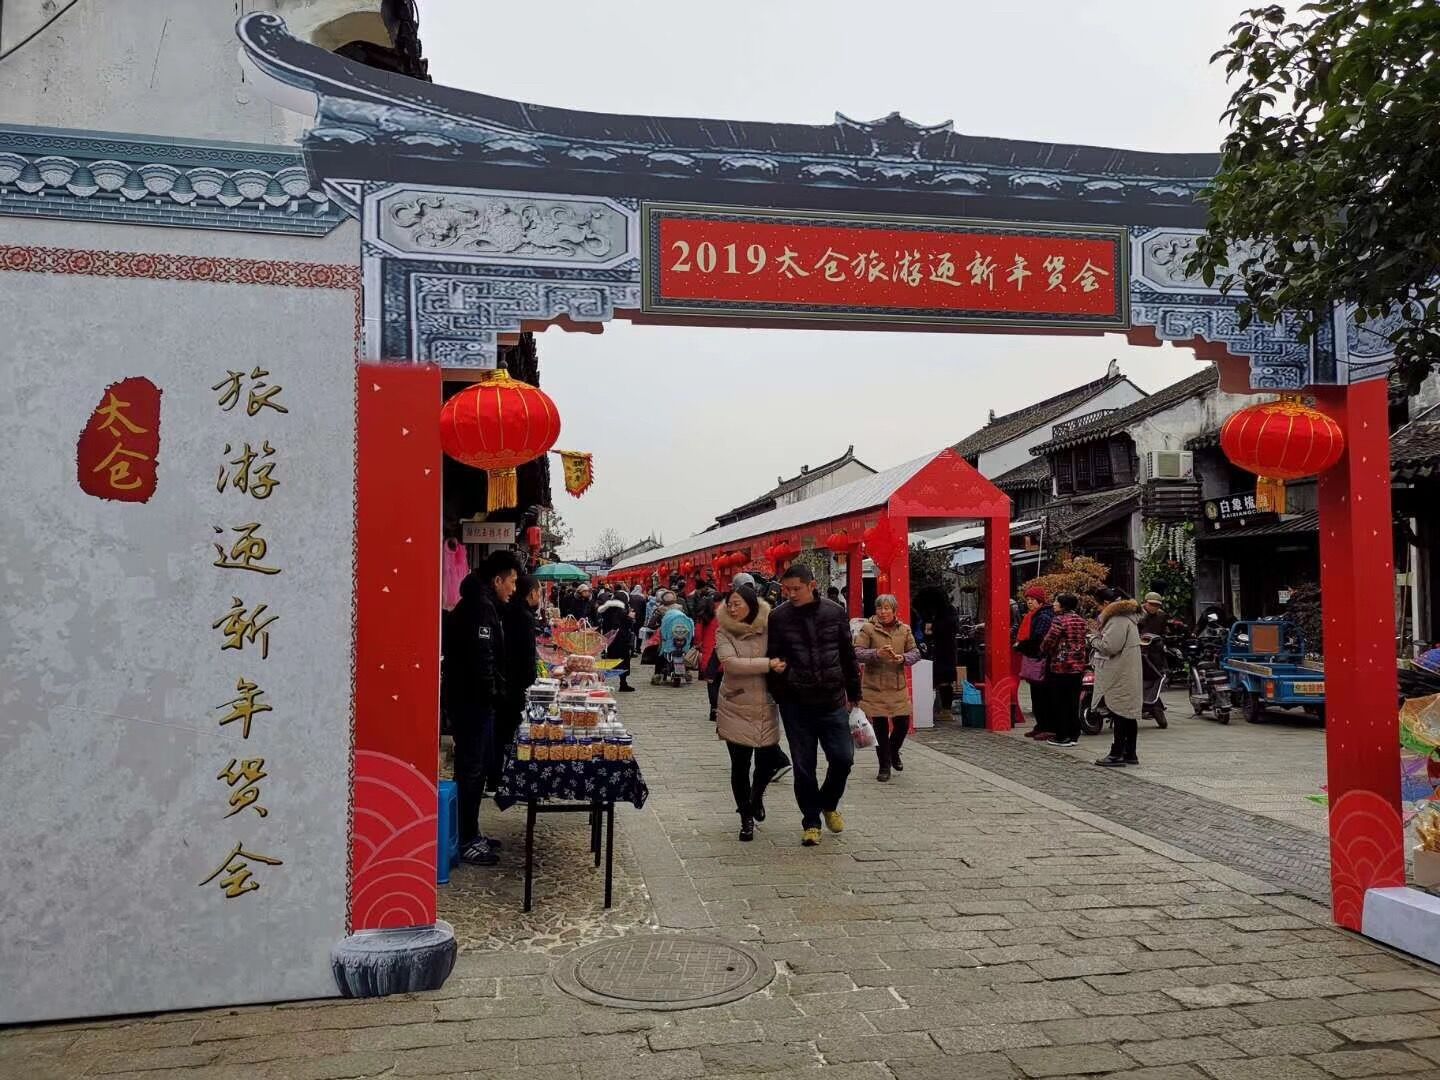 2019太仓旅游迎新年货会于元旦假期顺利举办